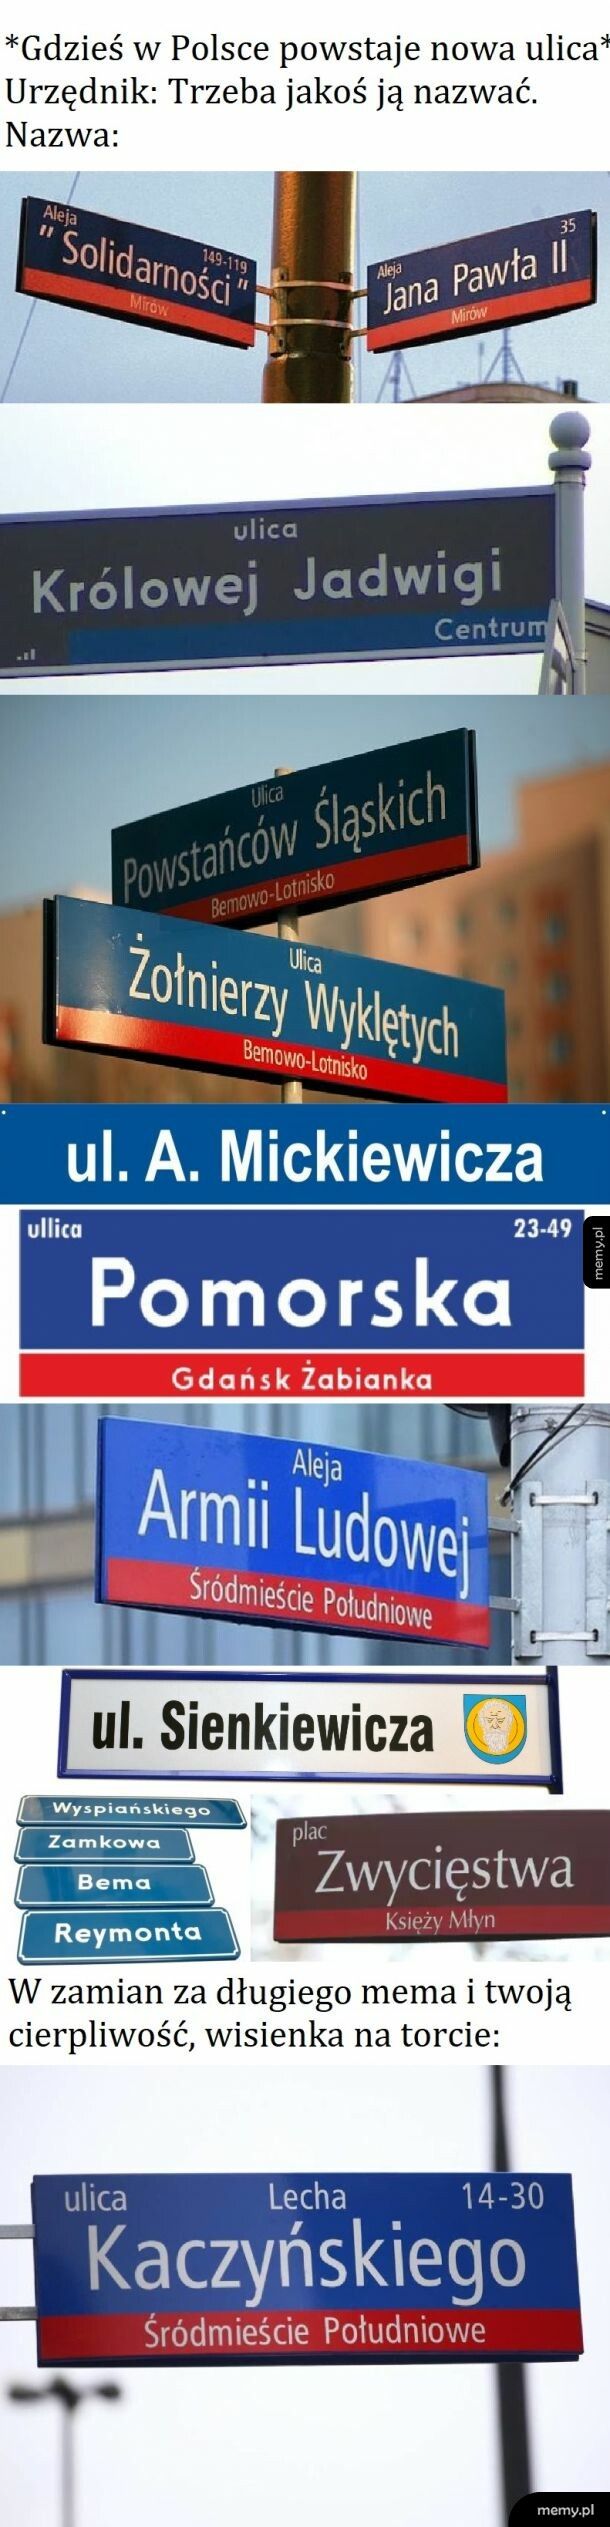 Polska kreatywnosc w nazewnictwie